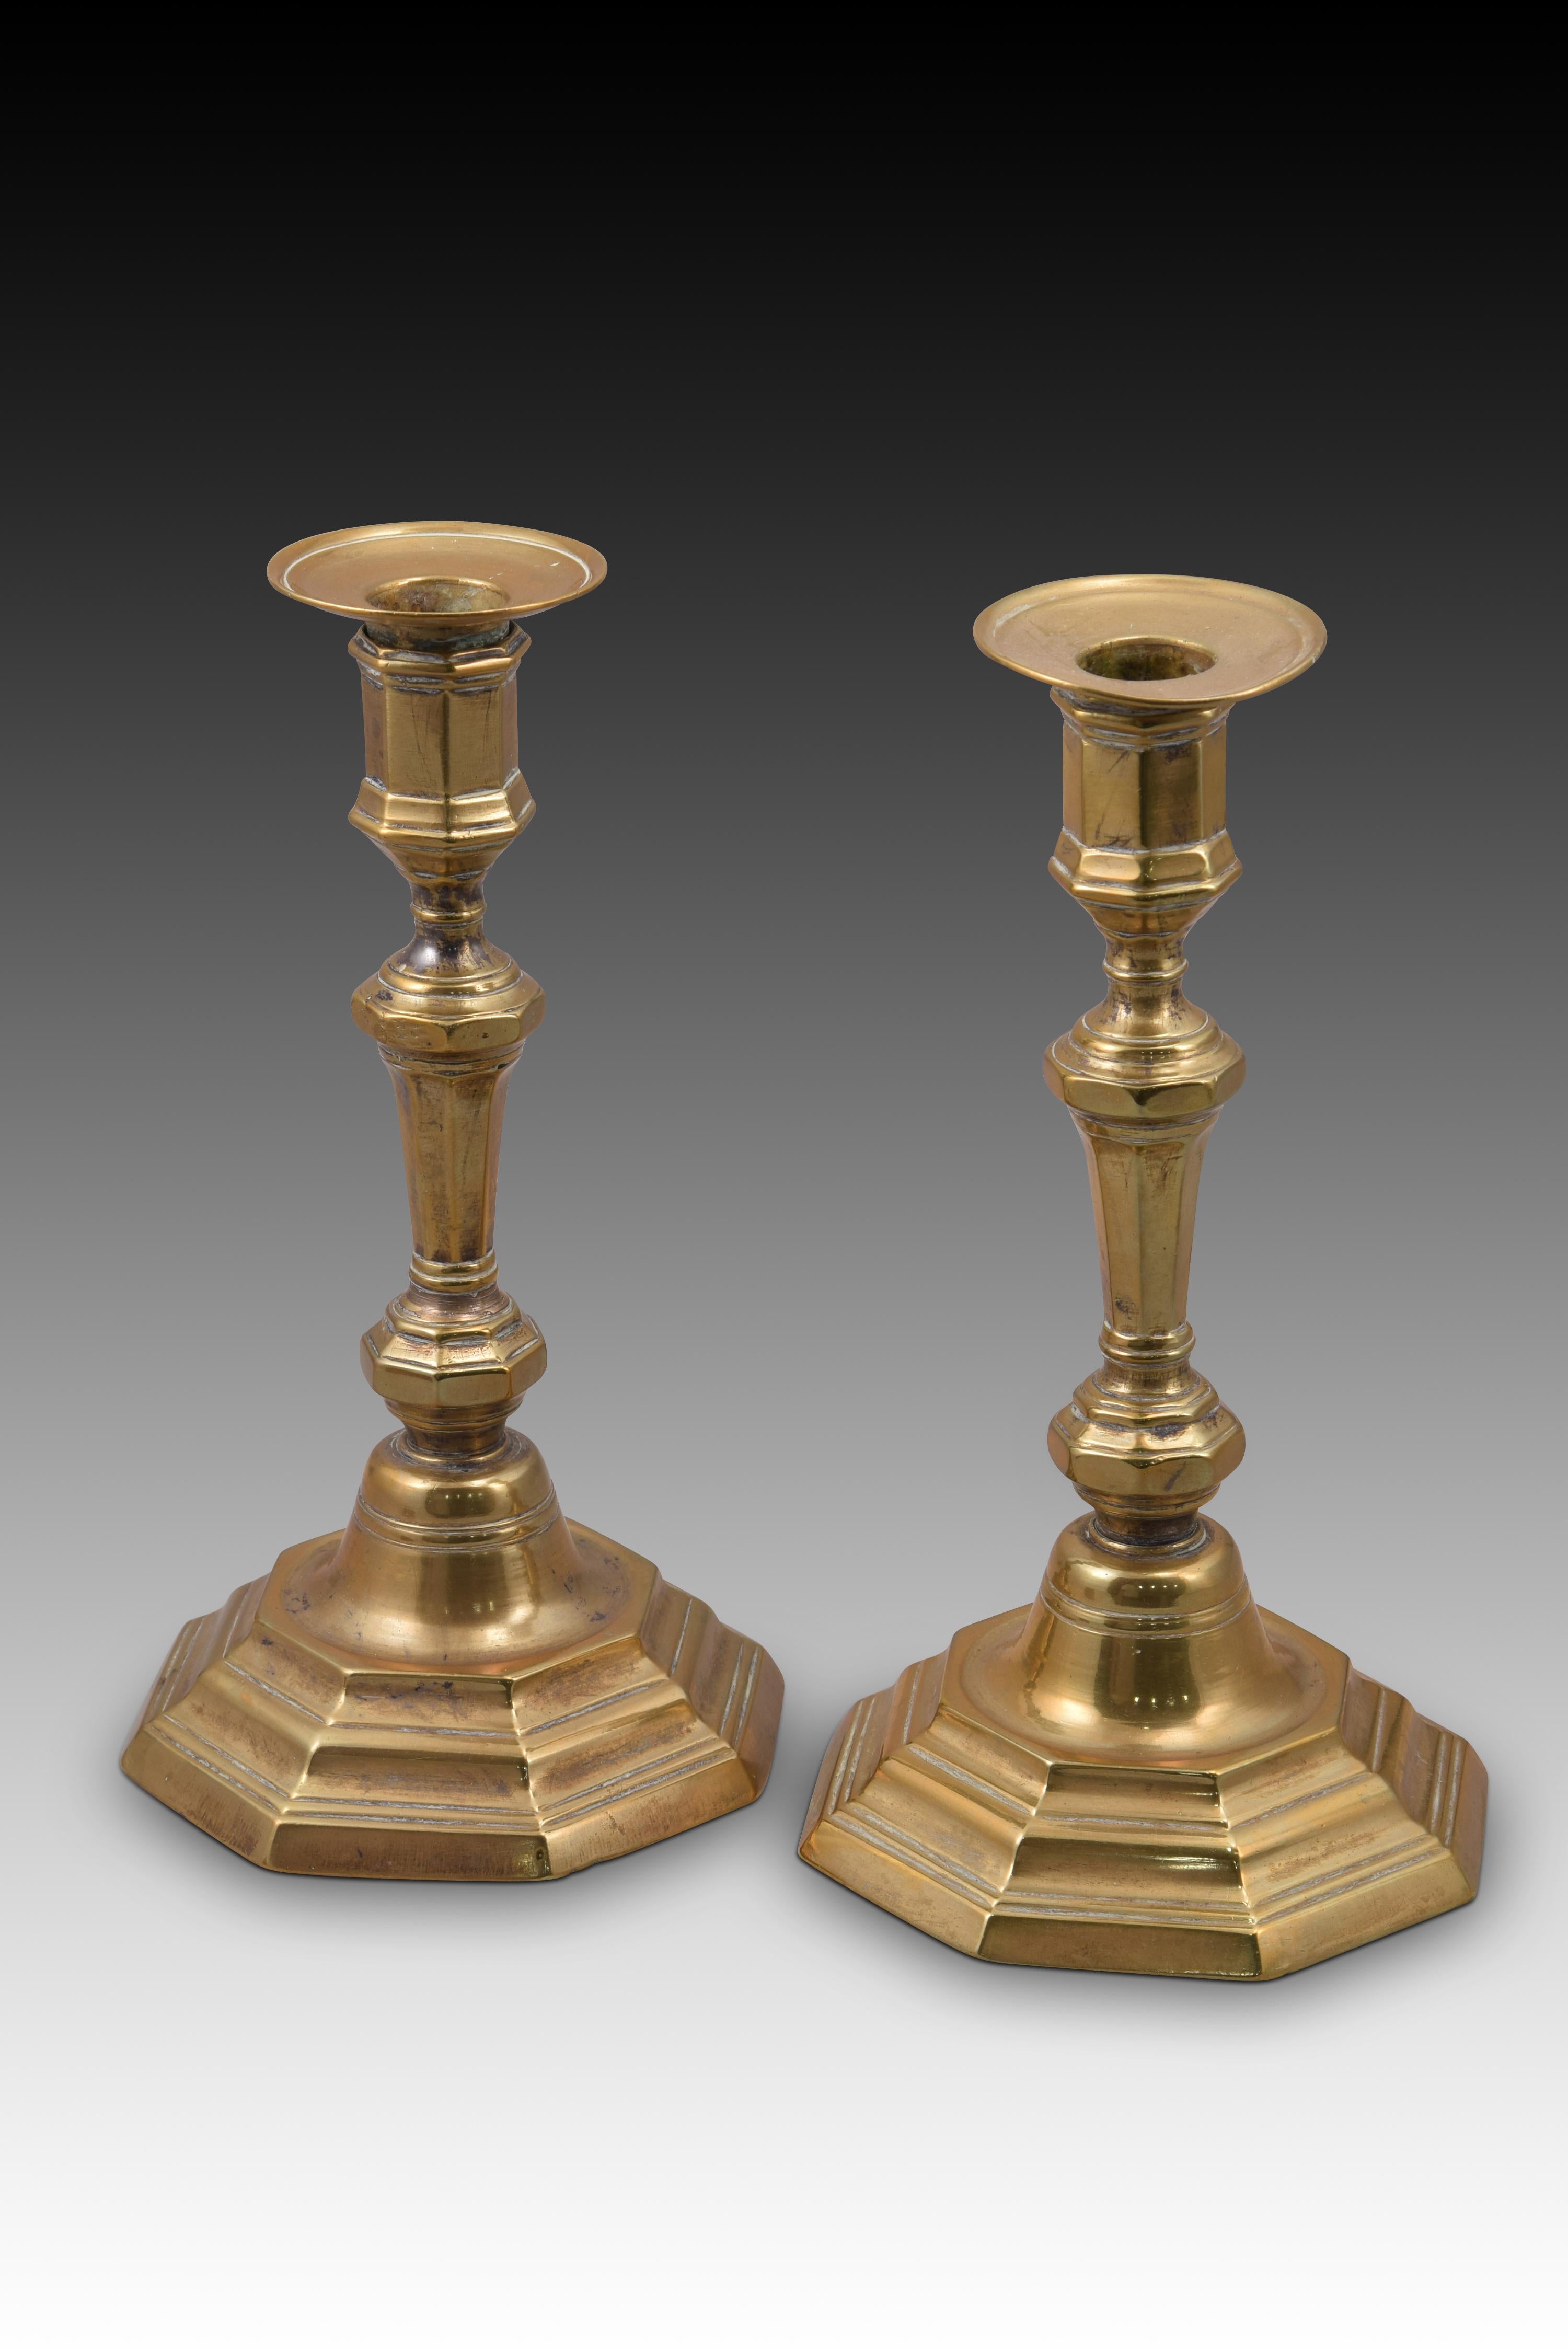 Paire de chandeliers. Bronze. France, 18e siècle. 
Paire de chandeliers en bronze qui présentent une base polygonale, étagée vers le haut et vers le centre et rehaussée de moulures lisses, un axe à balustrade (également de section polygonale), et